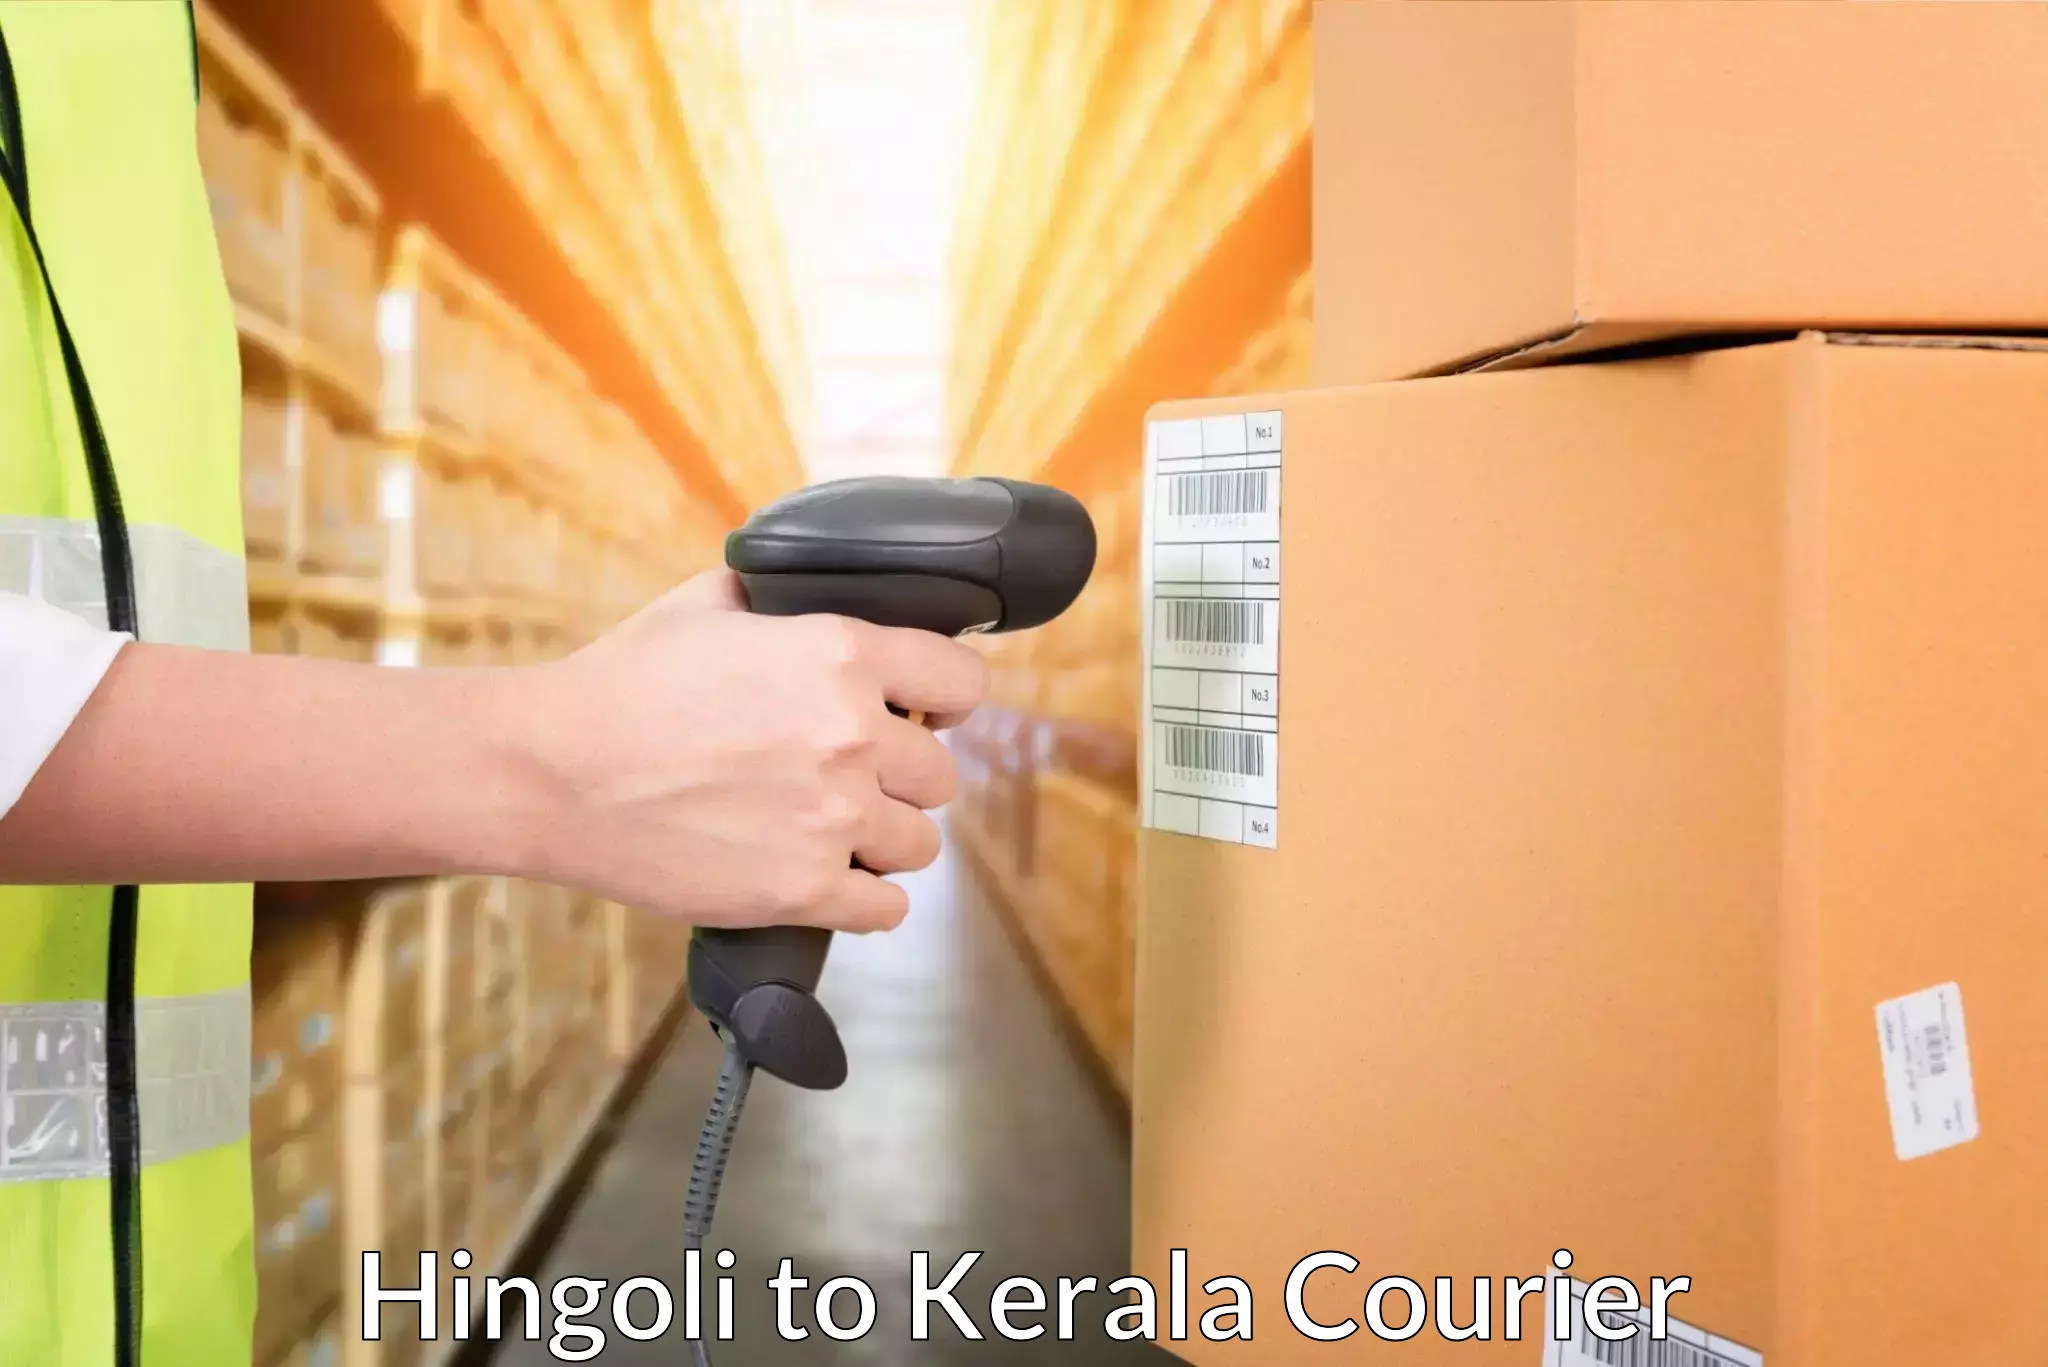 Next-day delivery options Hingoli to IIIT Kottayam